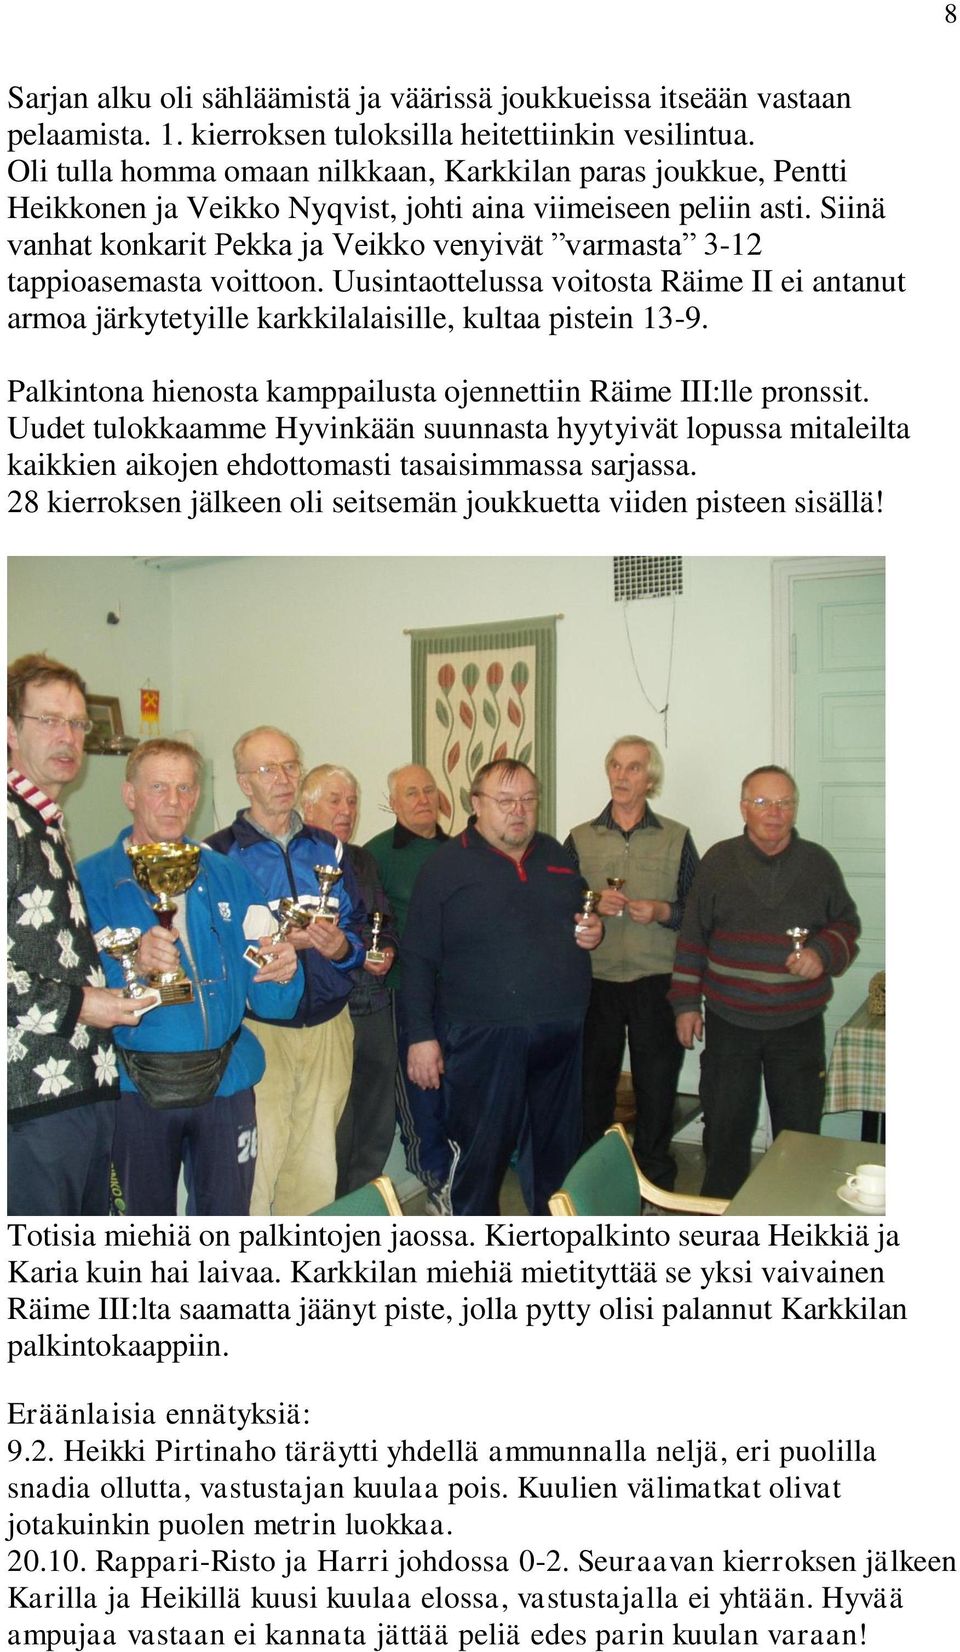 Siinä vanhat konkarit Pekka ja Veikko venyivät varmasta 3-12 tappioasemasta voittoon. Uusintaottelussa voitosta Räime II ei antanut armoa järkytetyille karkkilalaisille, kultaa pistein 13-9.